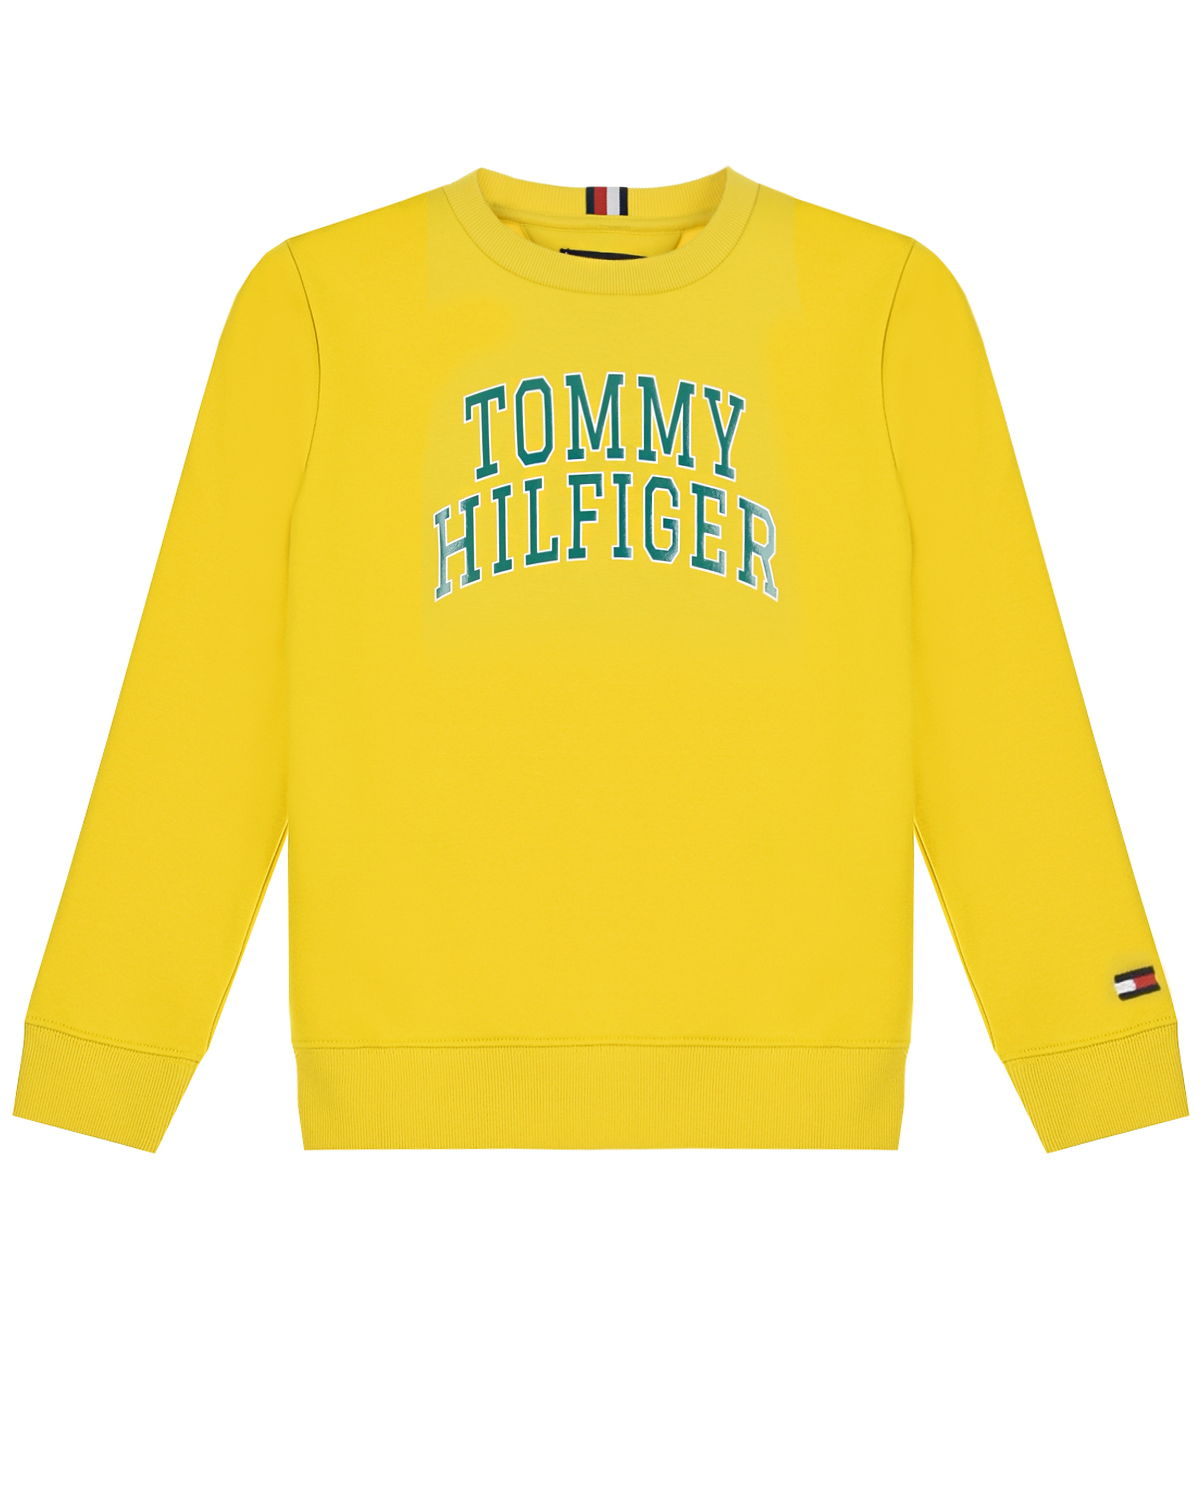 Желтый свитшот с синим логотипом Tommy Hilfiger детский, размер 128 - фото 1